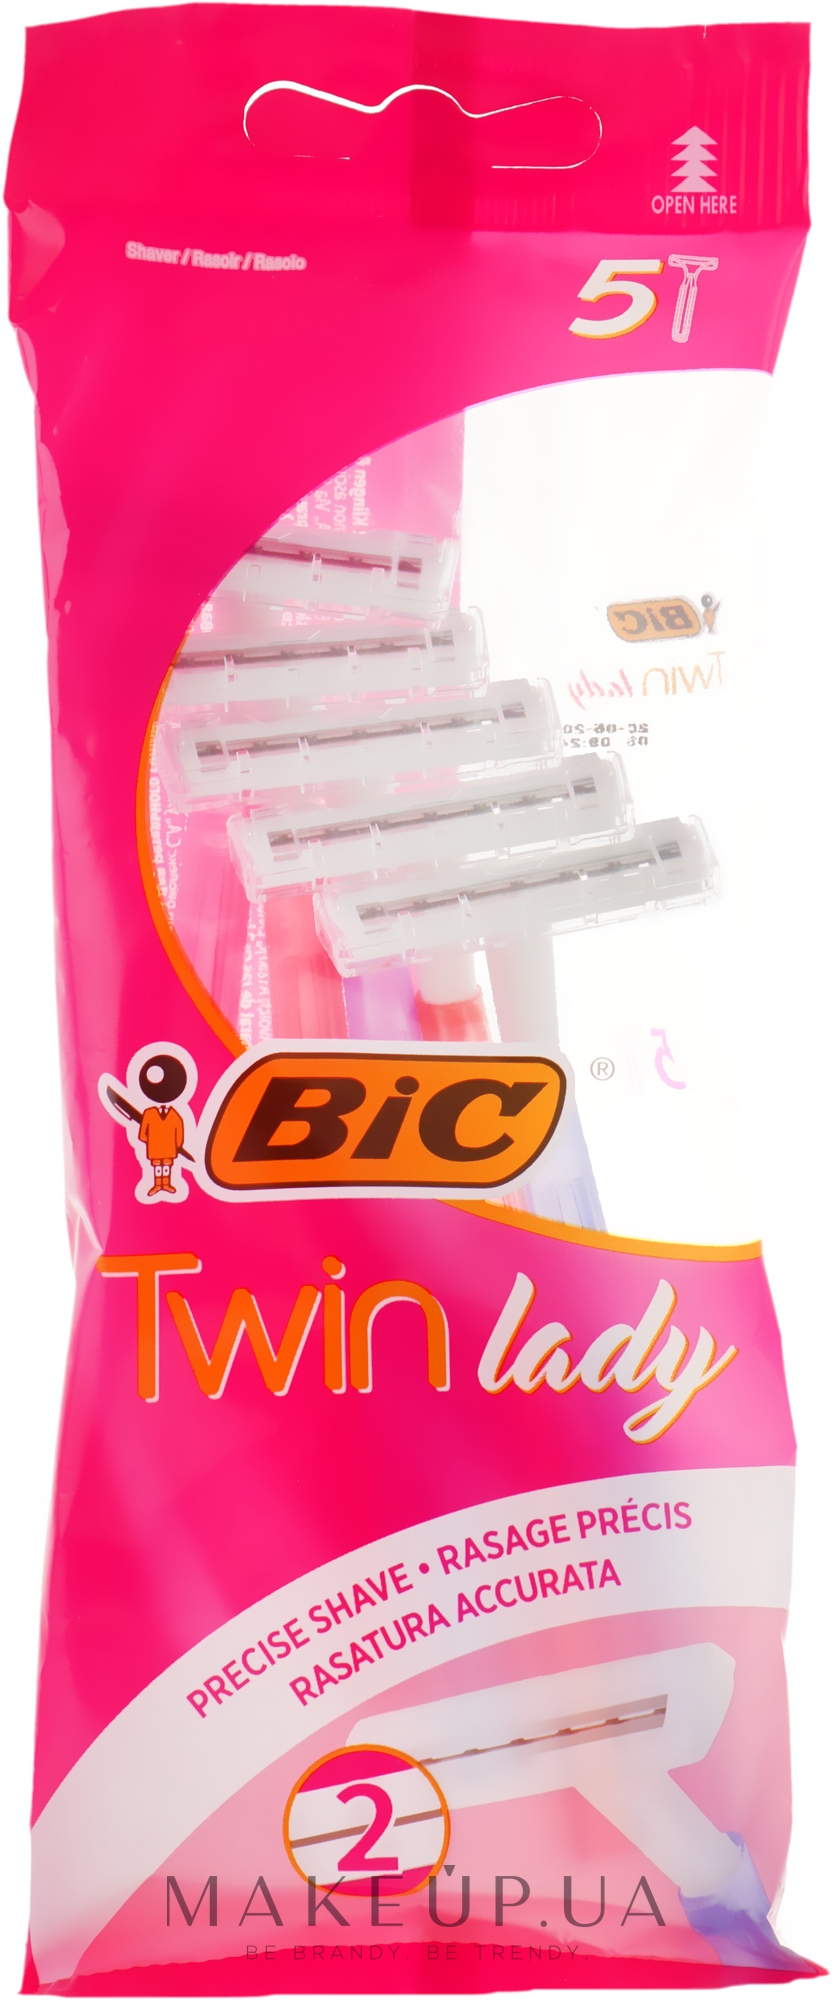 Жіночий станок для гоління Twin Lady", 5 шт. - Bic — фото 5шт